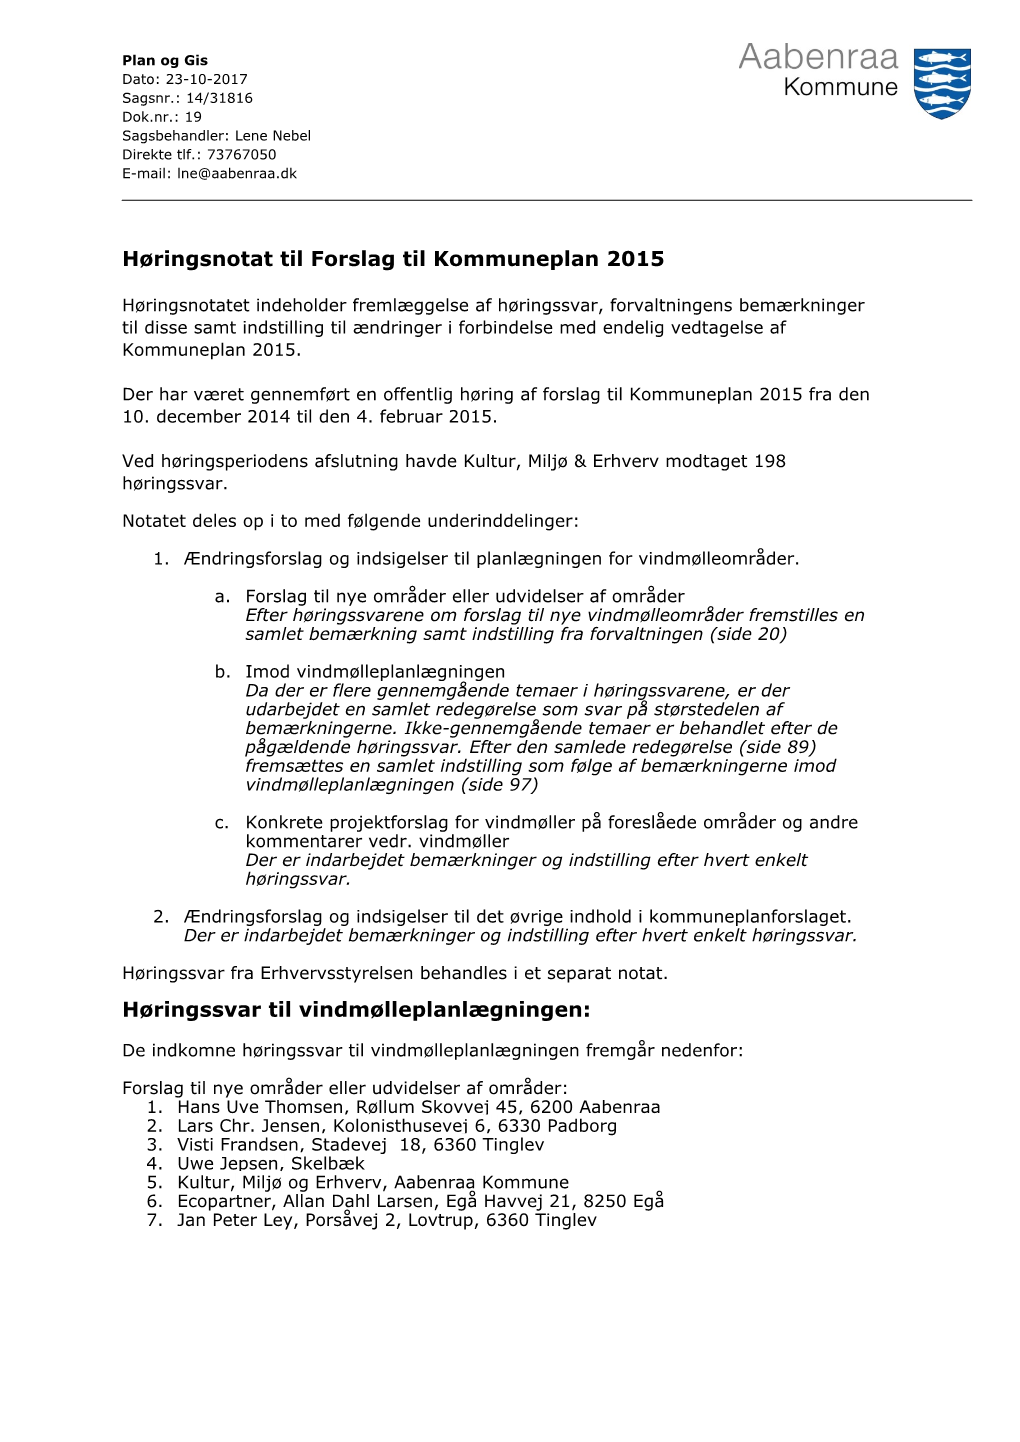 Høringsnotat Til Forslag Til Kommuneplan 2015 Høringssvar Til